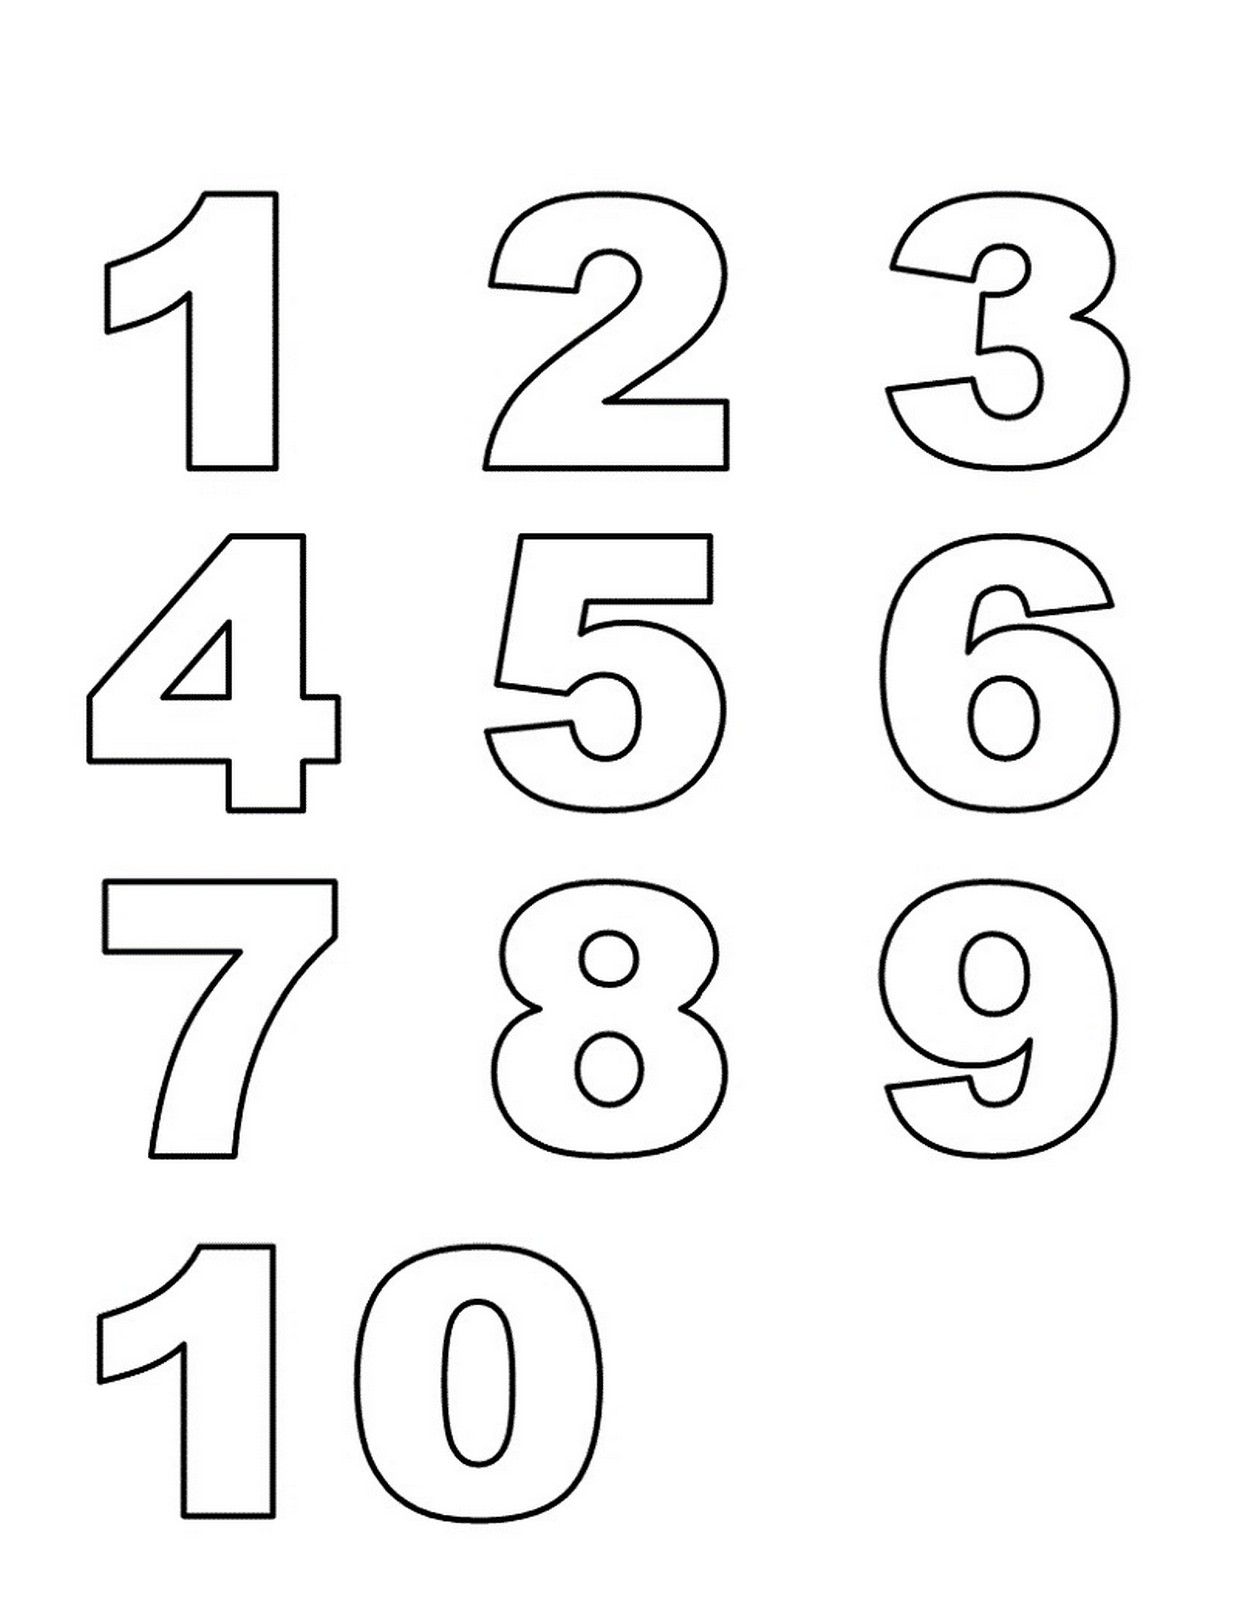 Printable Numbers 1 10 For Preschoolers_19661